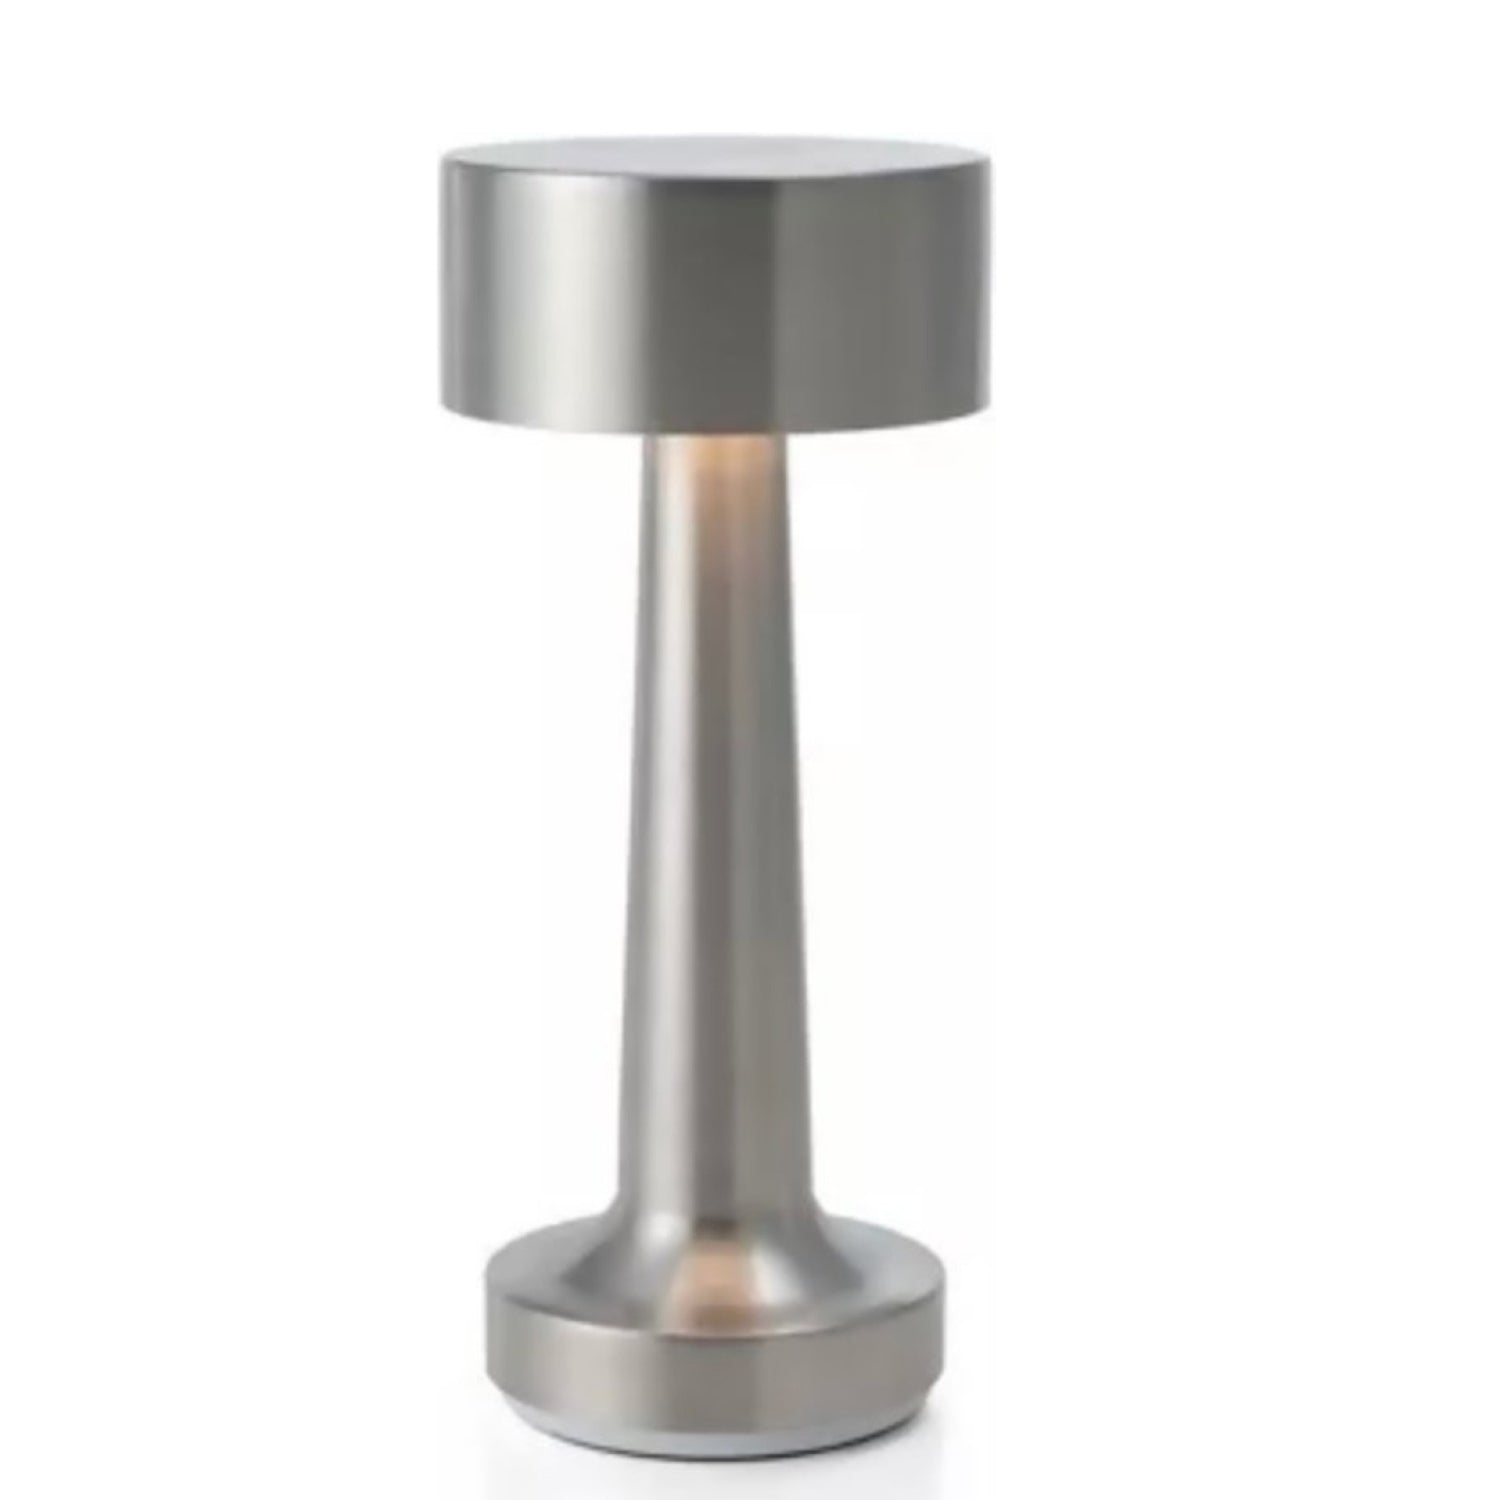 Goliving Classic Tafellamp Oplaadbaar – Draadloos en dimbaar – Moderne touch lamp – Nachtlamp Slaapkamer – 21 cm – Zilver